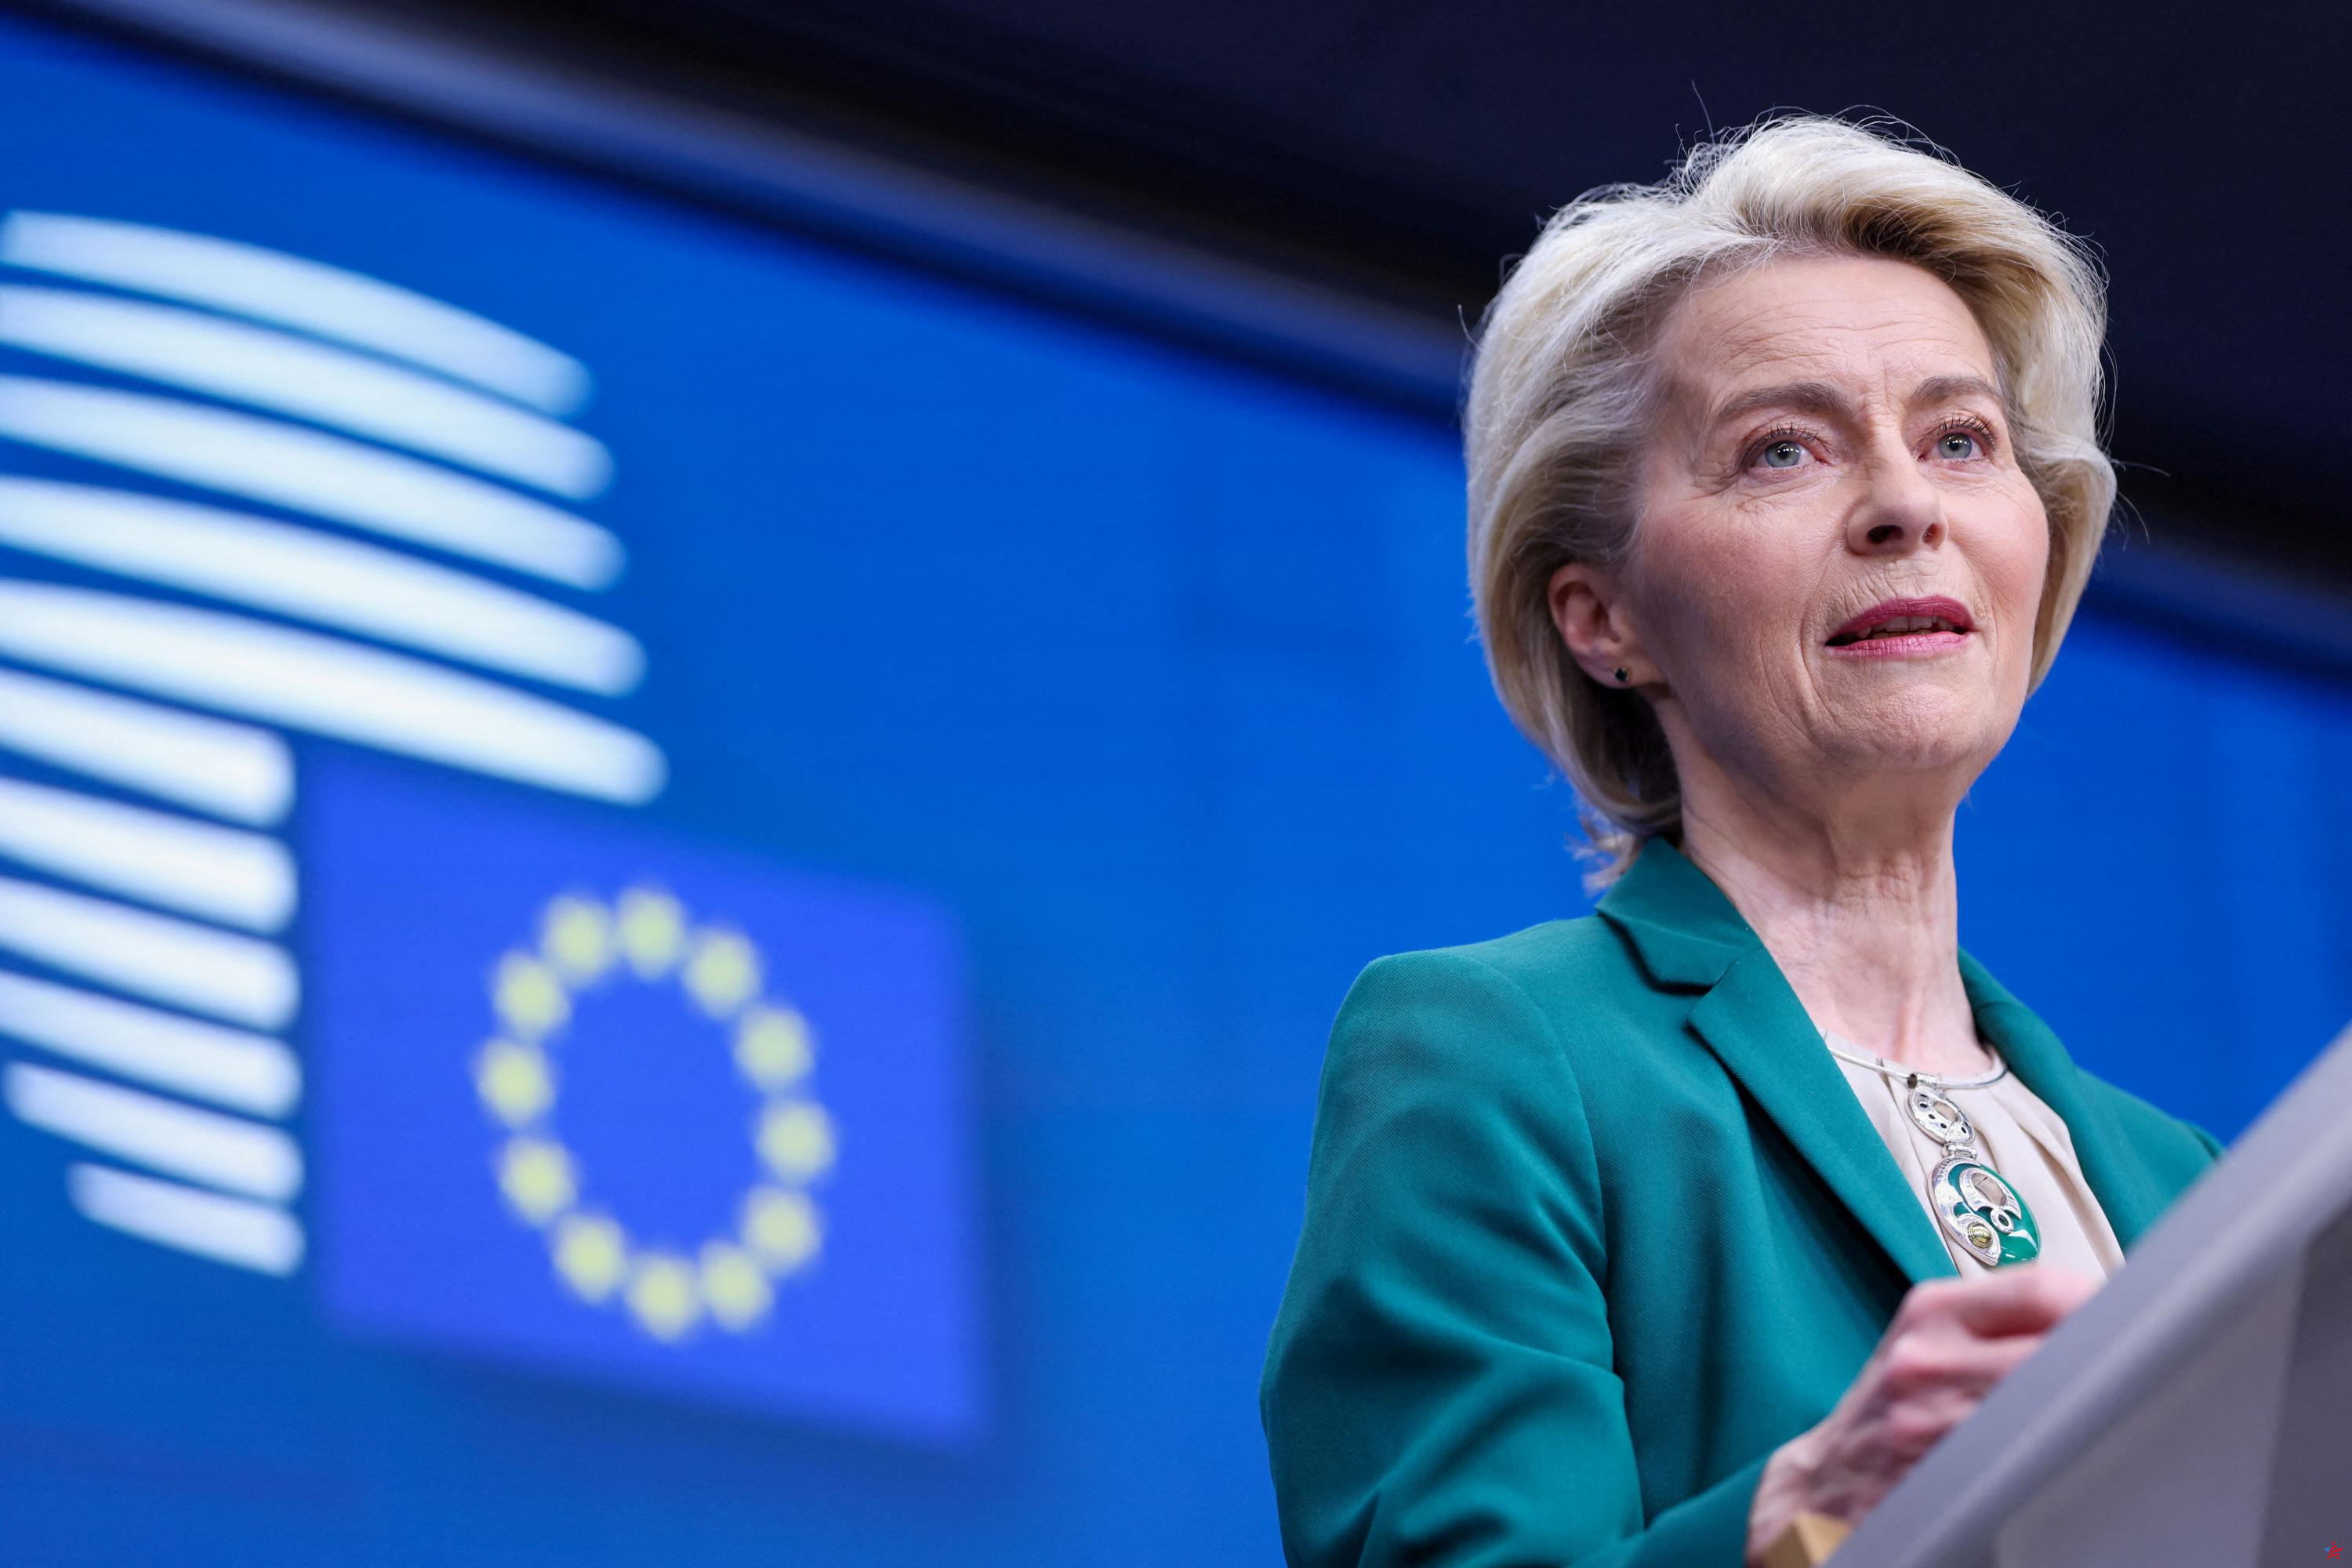 UE: Piden a Ursula Von der Leyen que explique su controvertido nombramiento